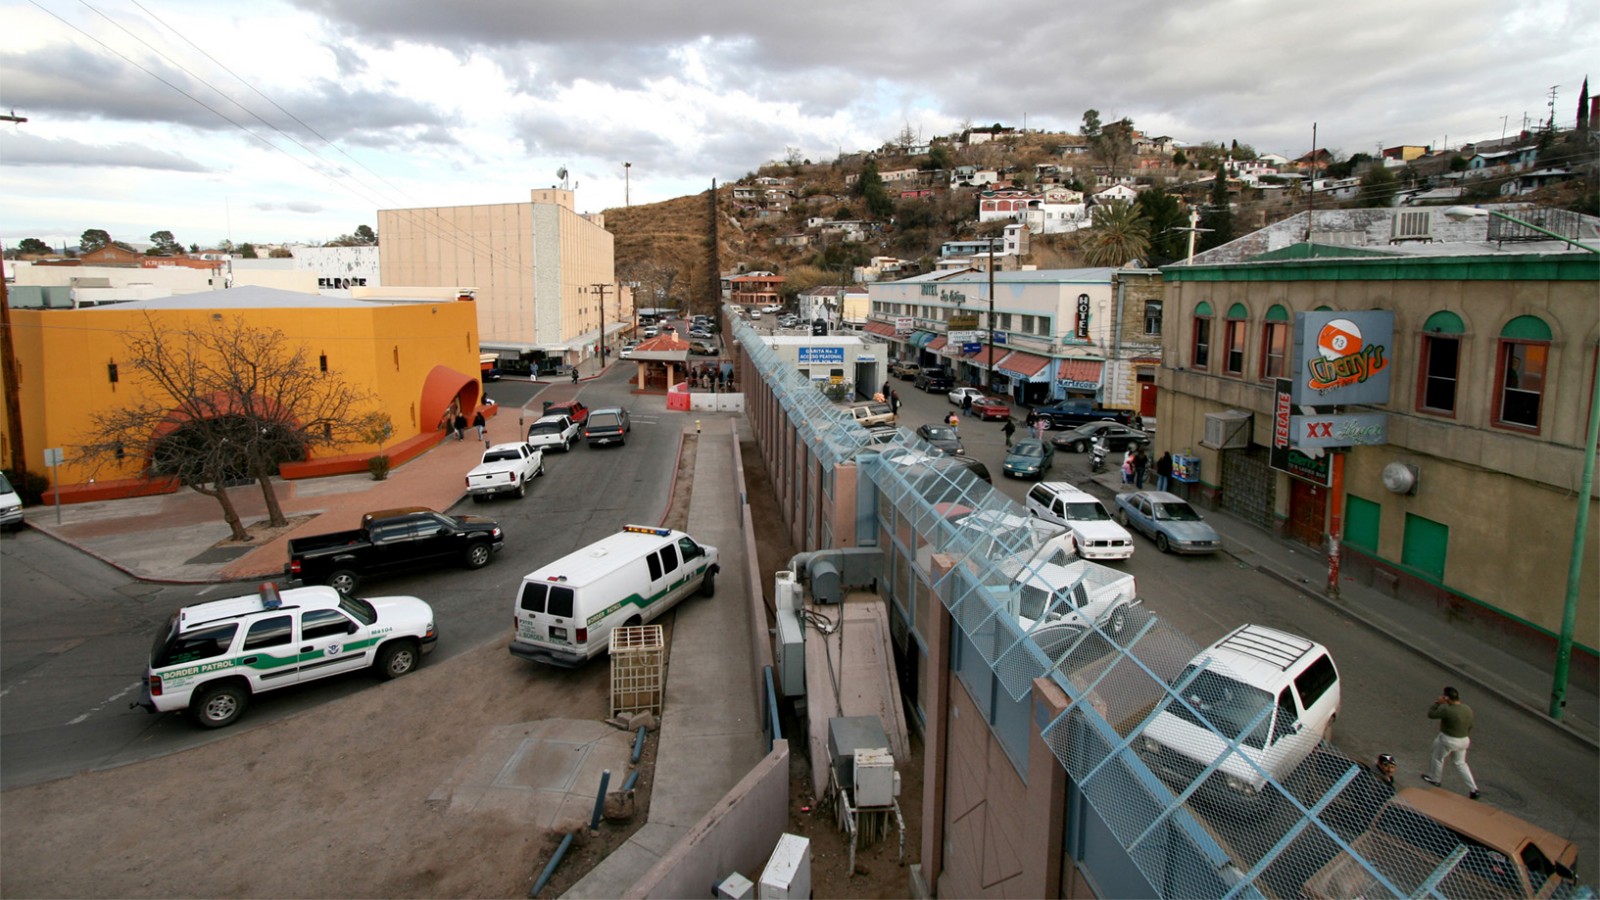 הגבול בין ארצות הברית למקסיקו. מימין העיירה נגולס, מקסיקו. משמאל העיירה נגולס, אריזונה (צילום: Sgt. 1st Class Gordon Hyde U.S Army)